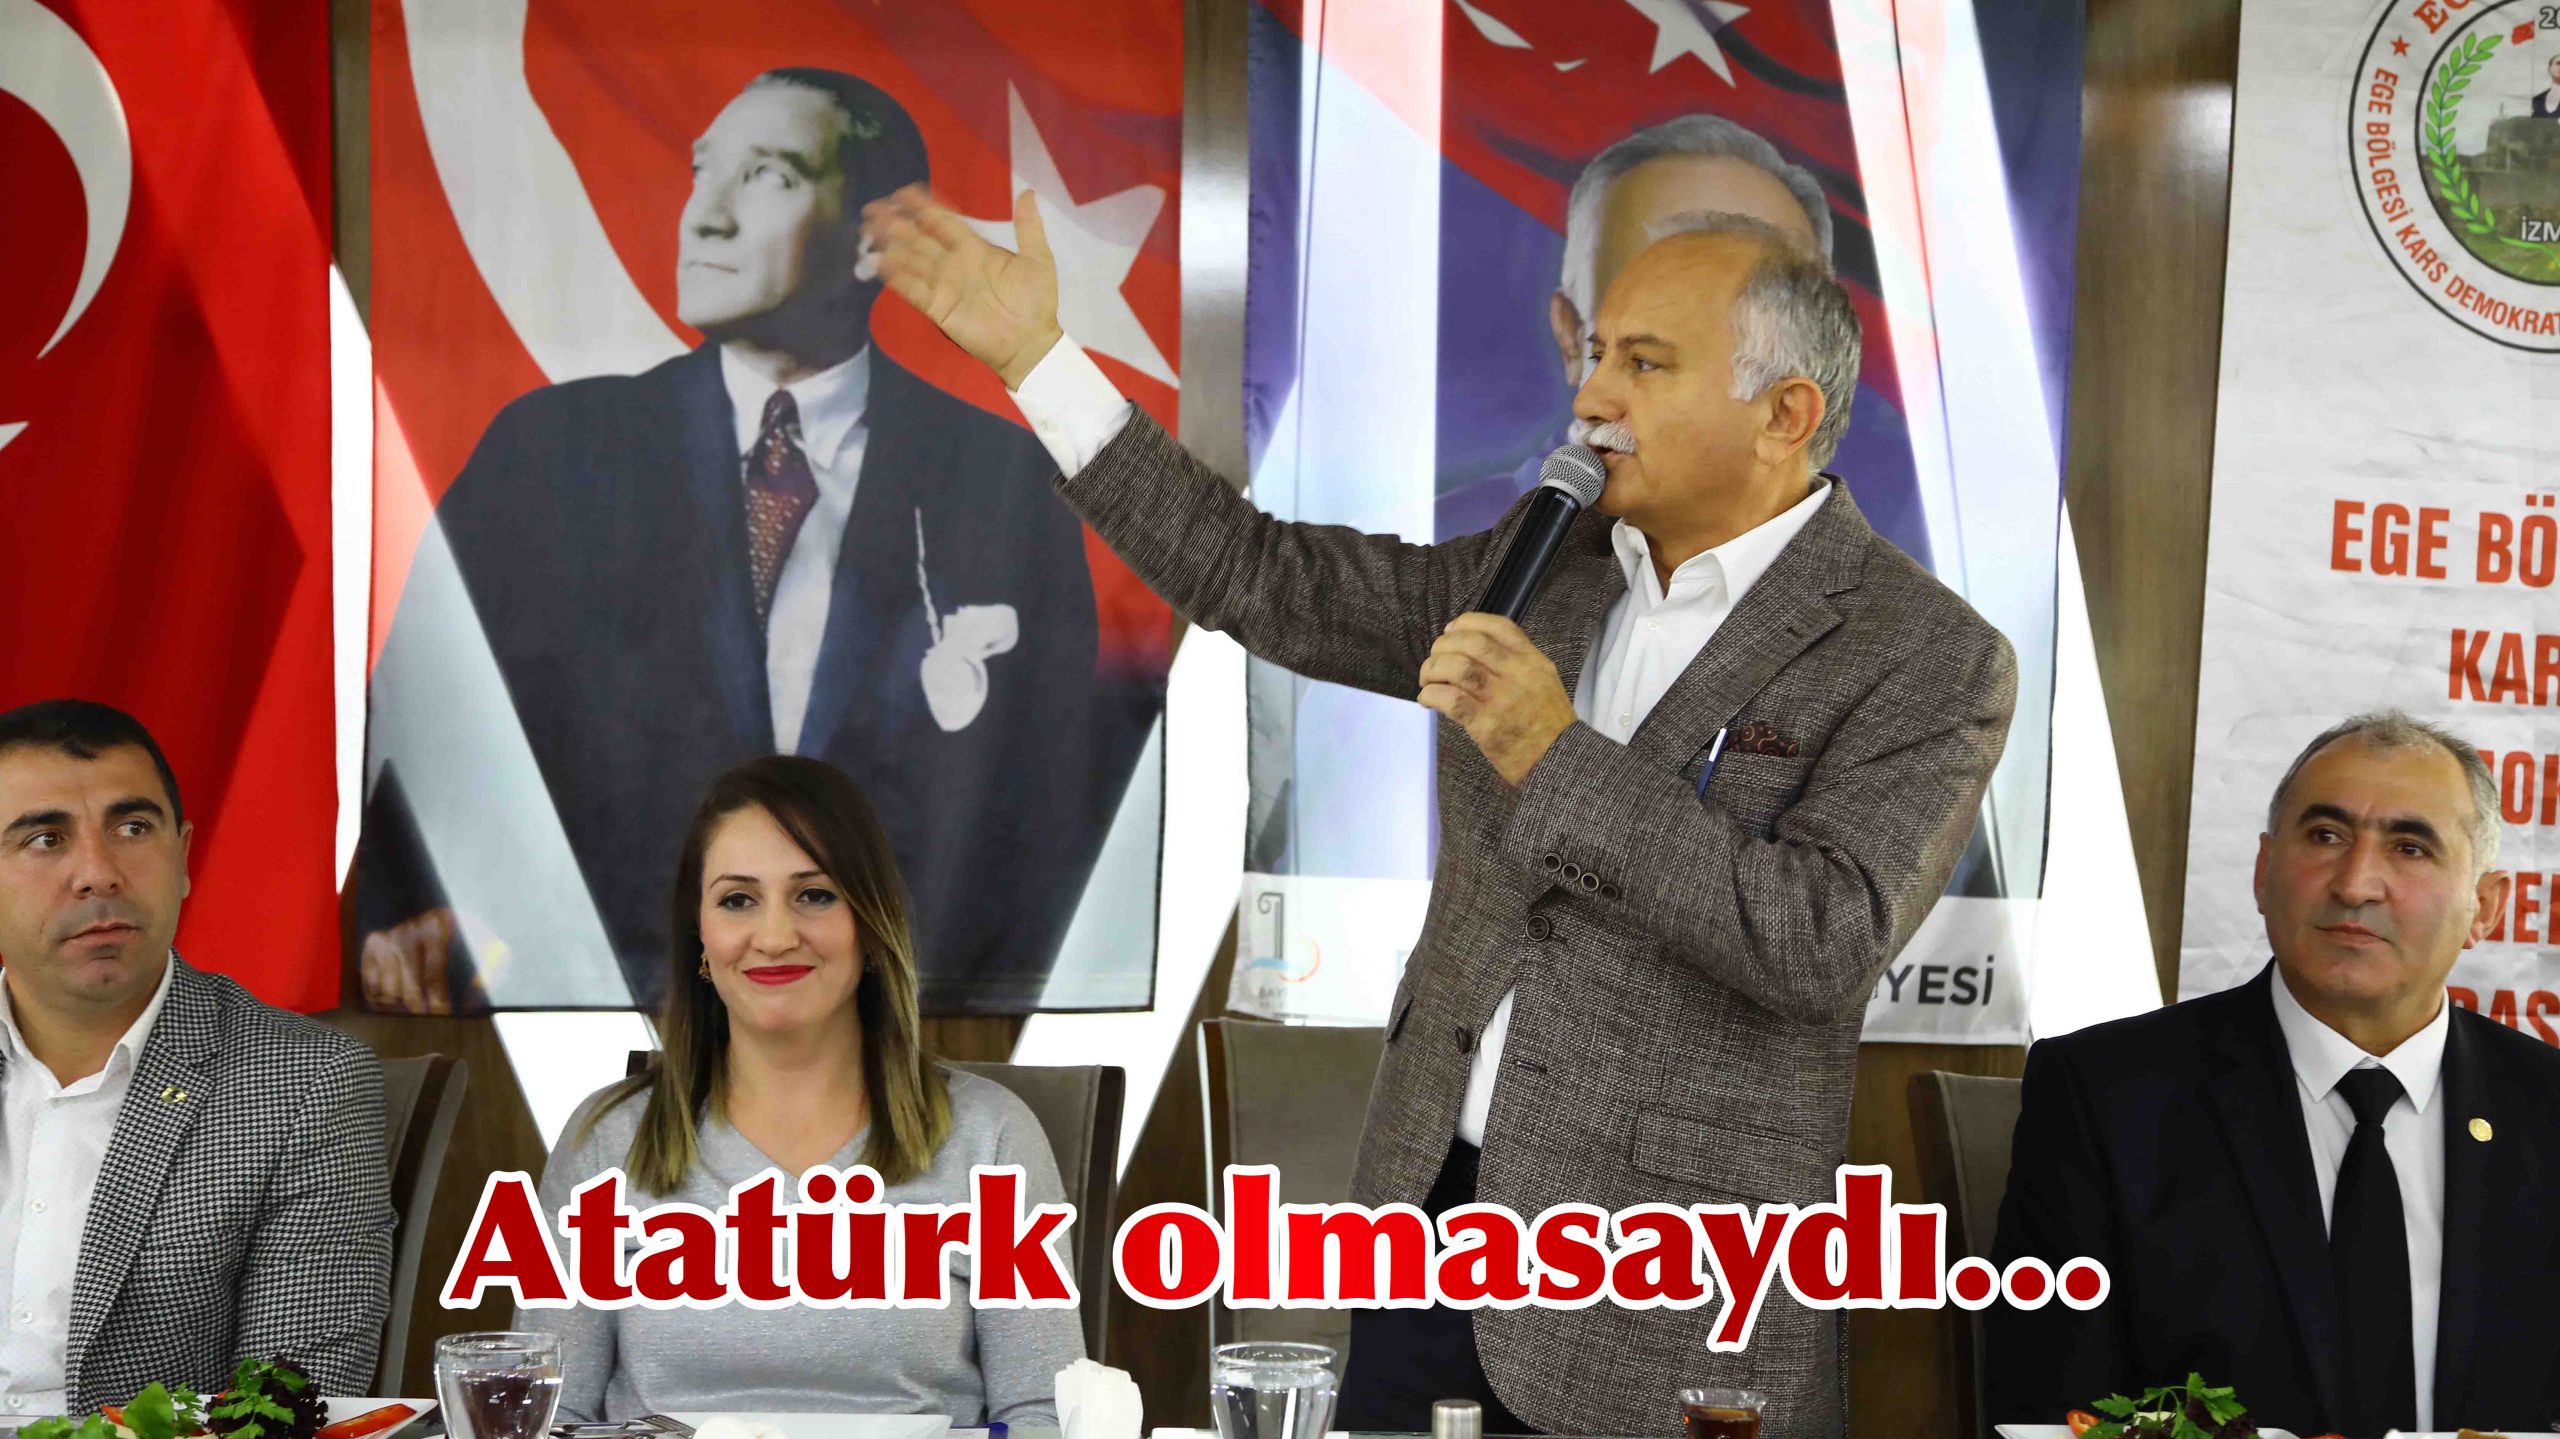 Atatürk olmasaydı…